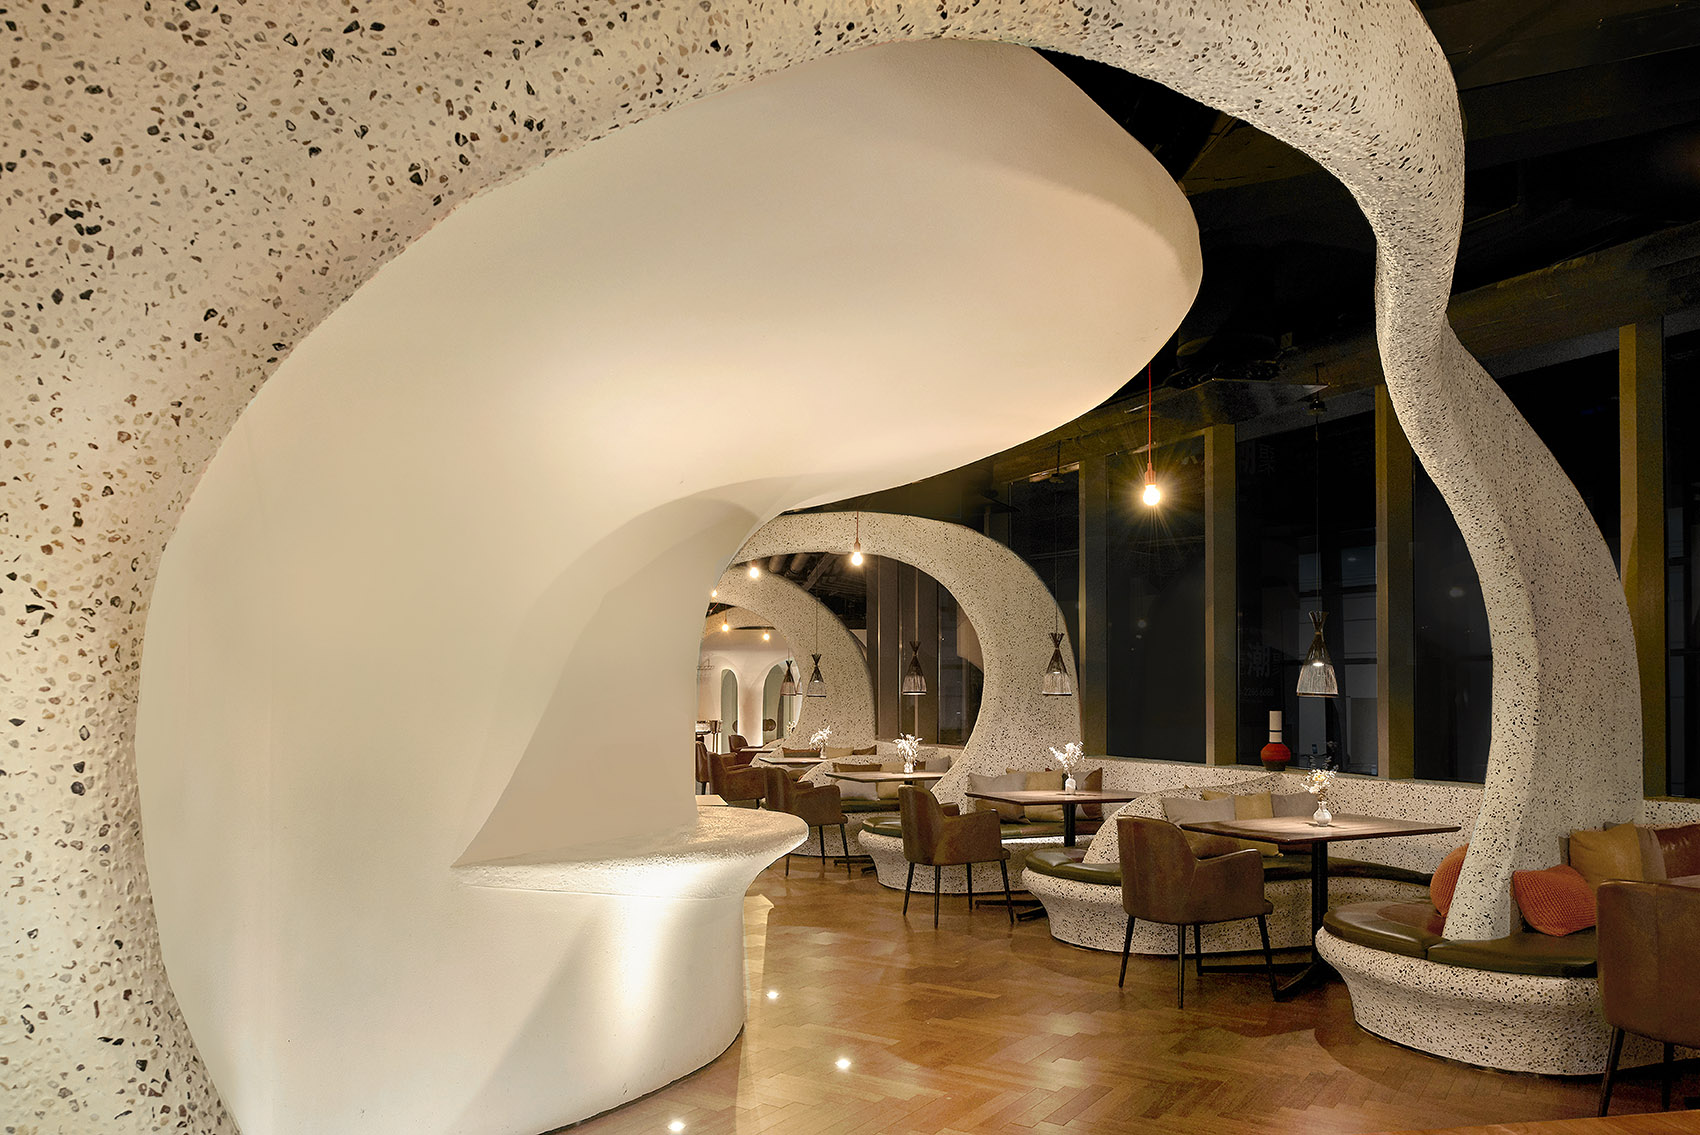 餐厅灯光设计案例,Tapa Tapa西班牙餐厅上海店灯光实拍效果图,商业照明